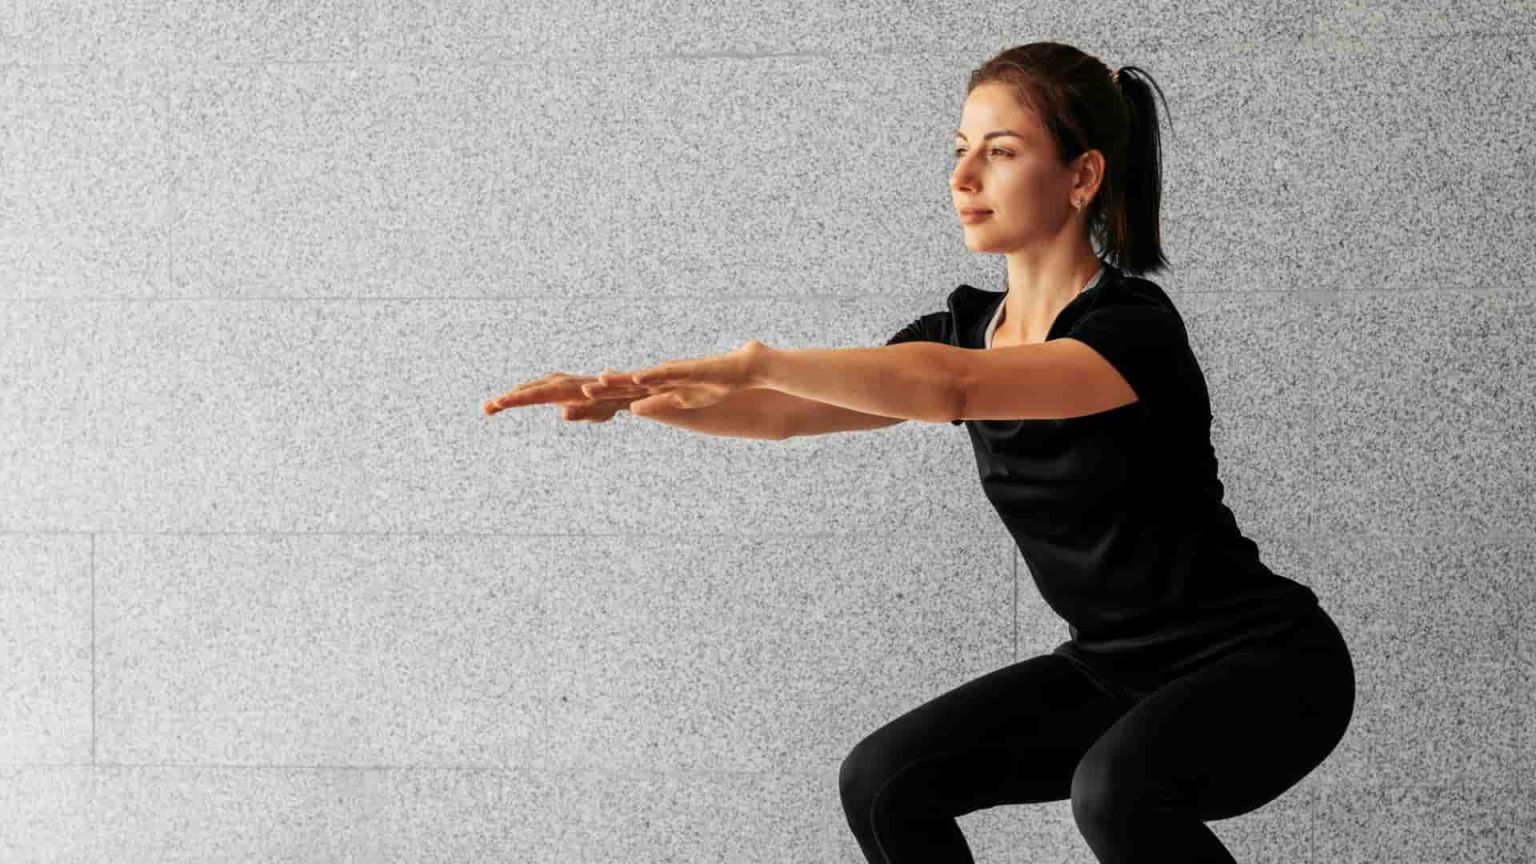 gerakan jongkok berdiri terutama dapat memperkuat otot